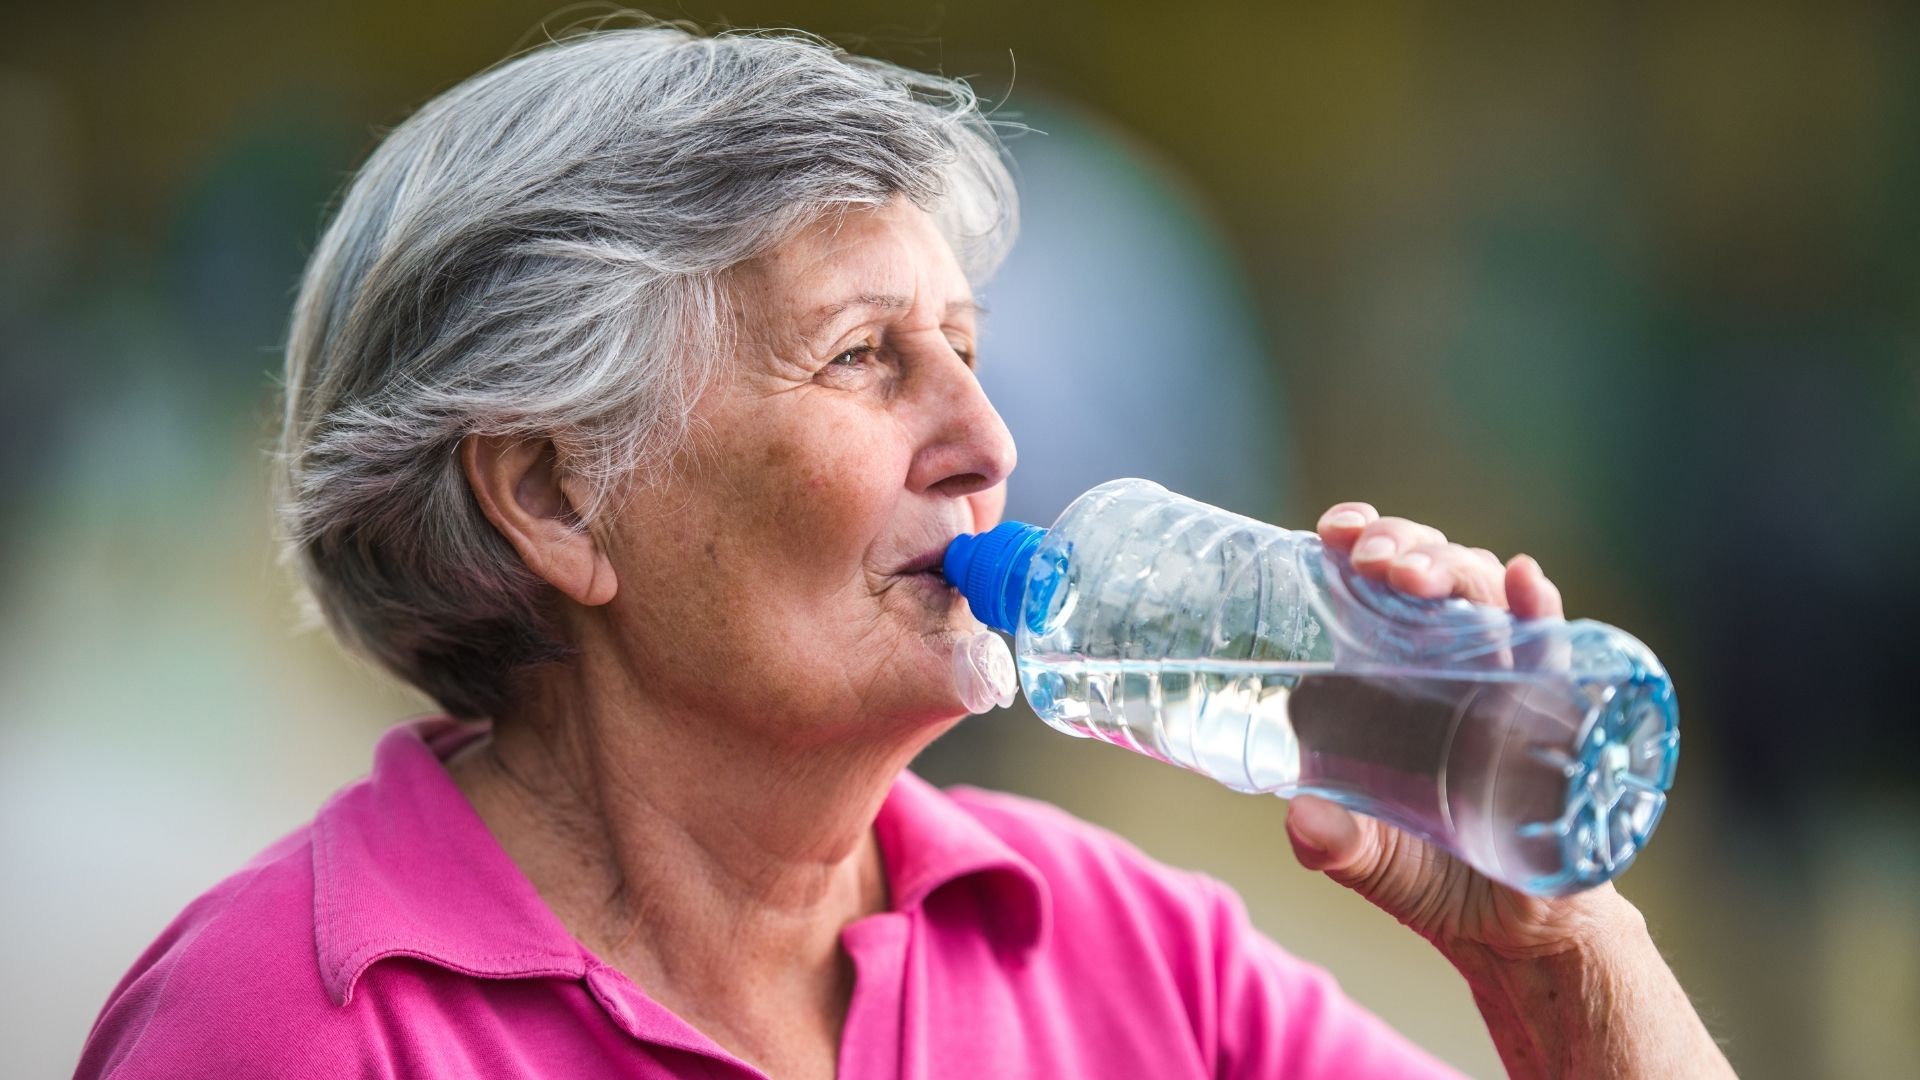 Los síntomas de deshidratación incluyen cefalea, delirio, confusión y mareos (Getty)